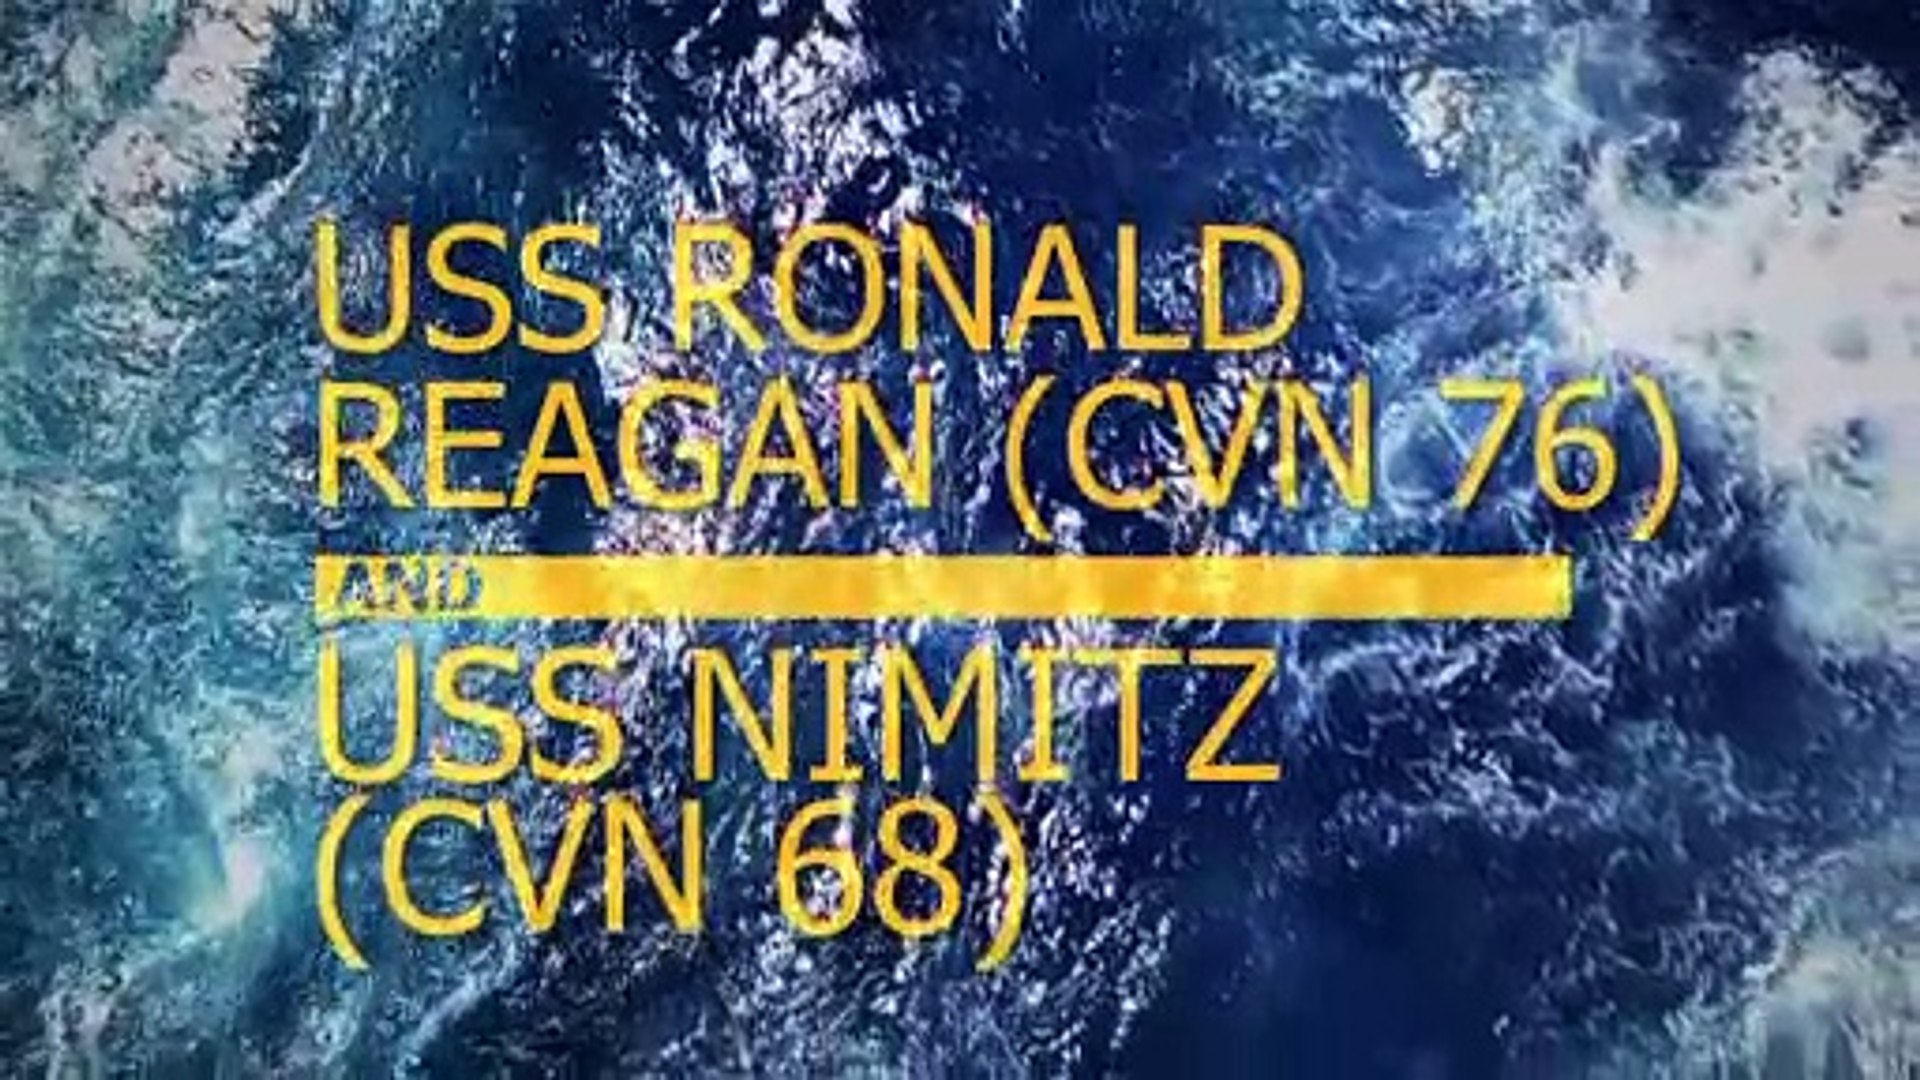 Aviation Boatswain’s Mates • USS Ronald Reagan • South China Sea July 05, 2020